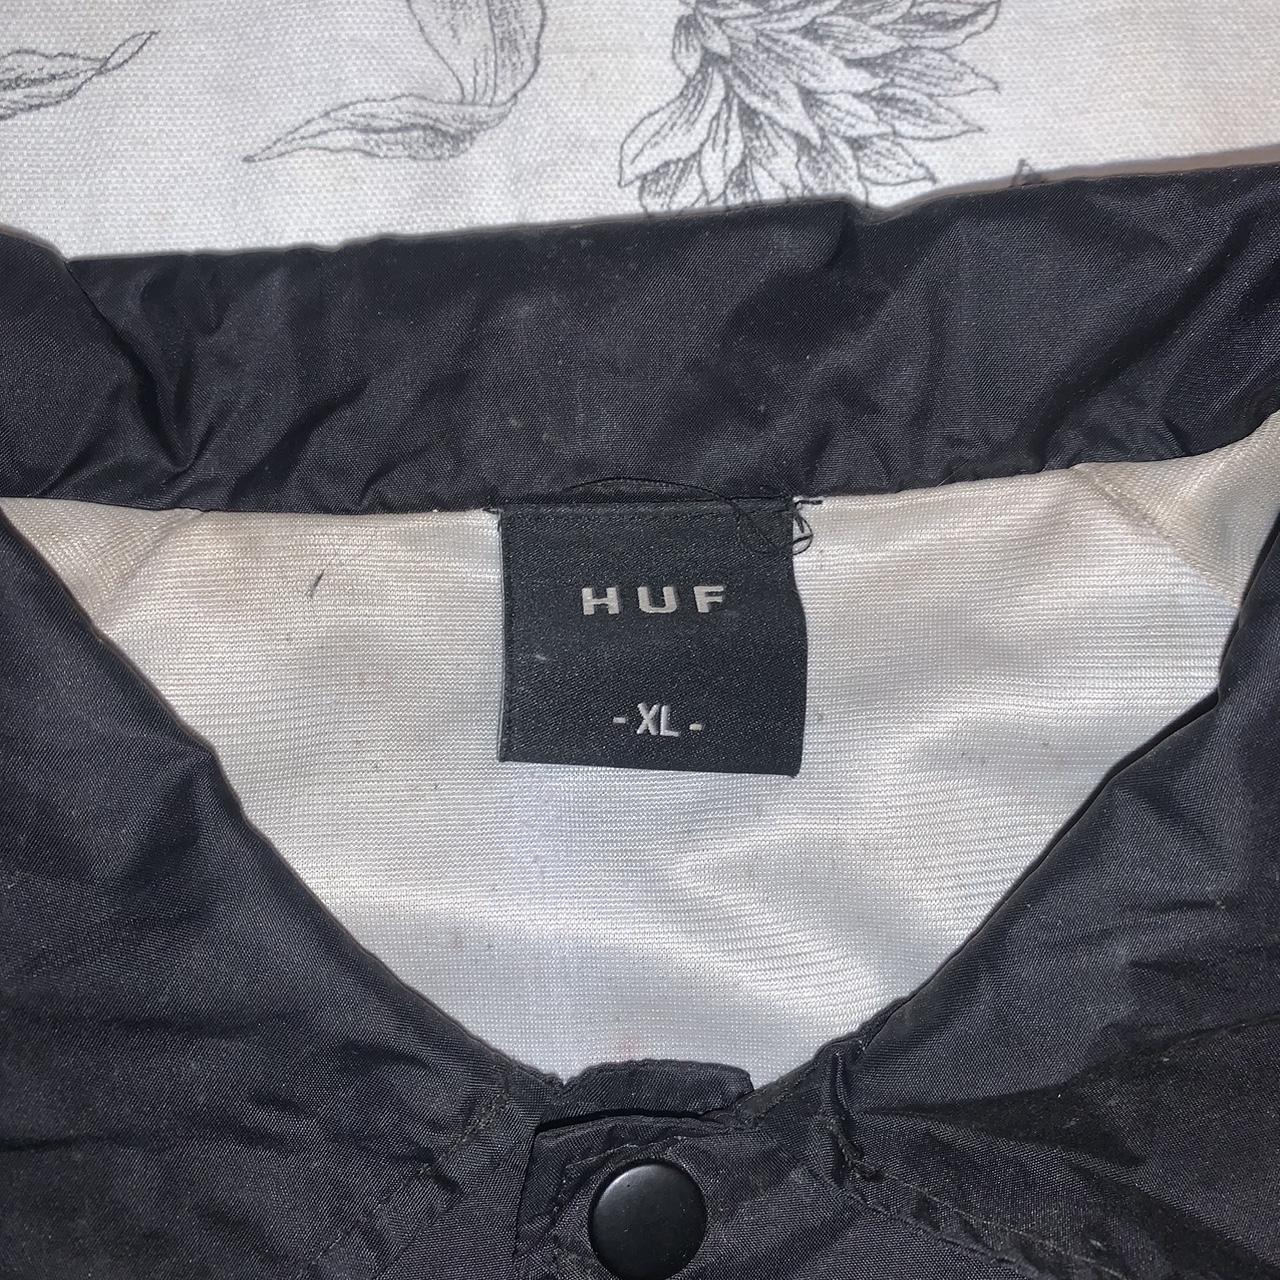 HUF Men's Black and White Jacket (4)